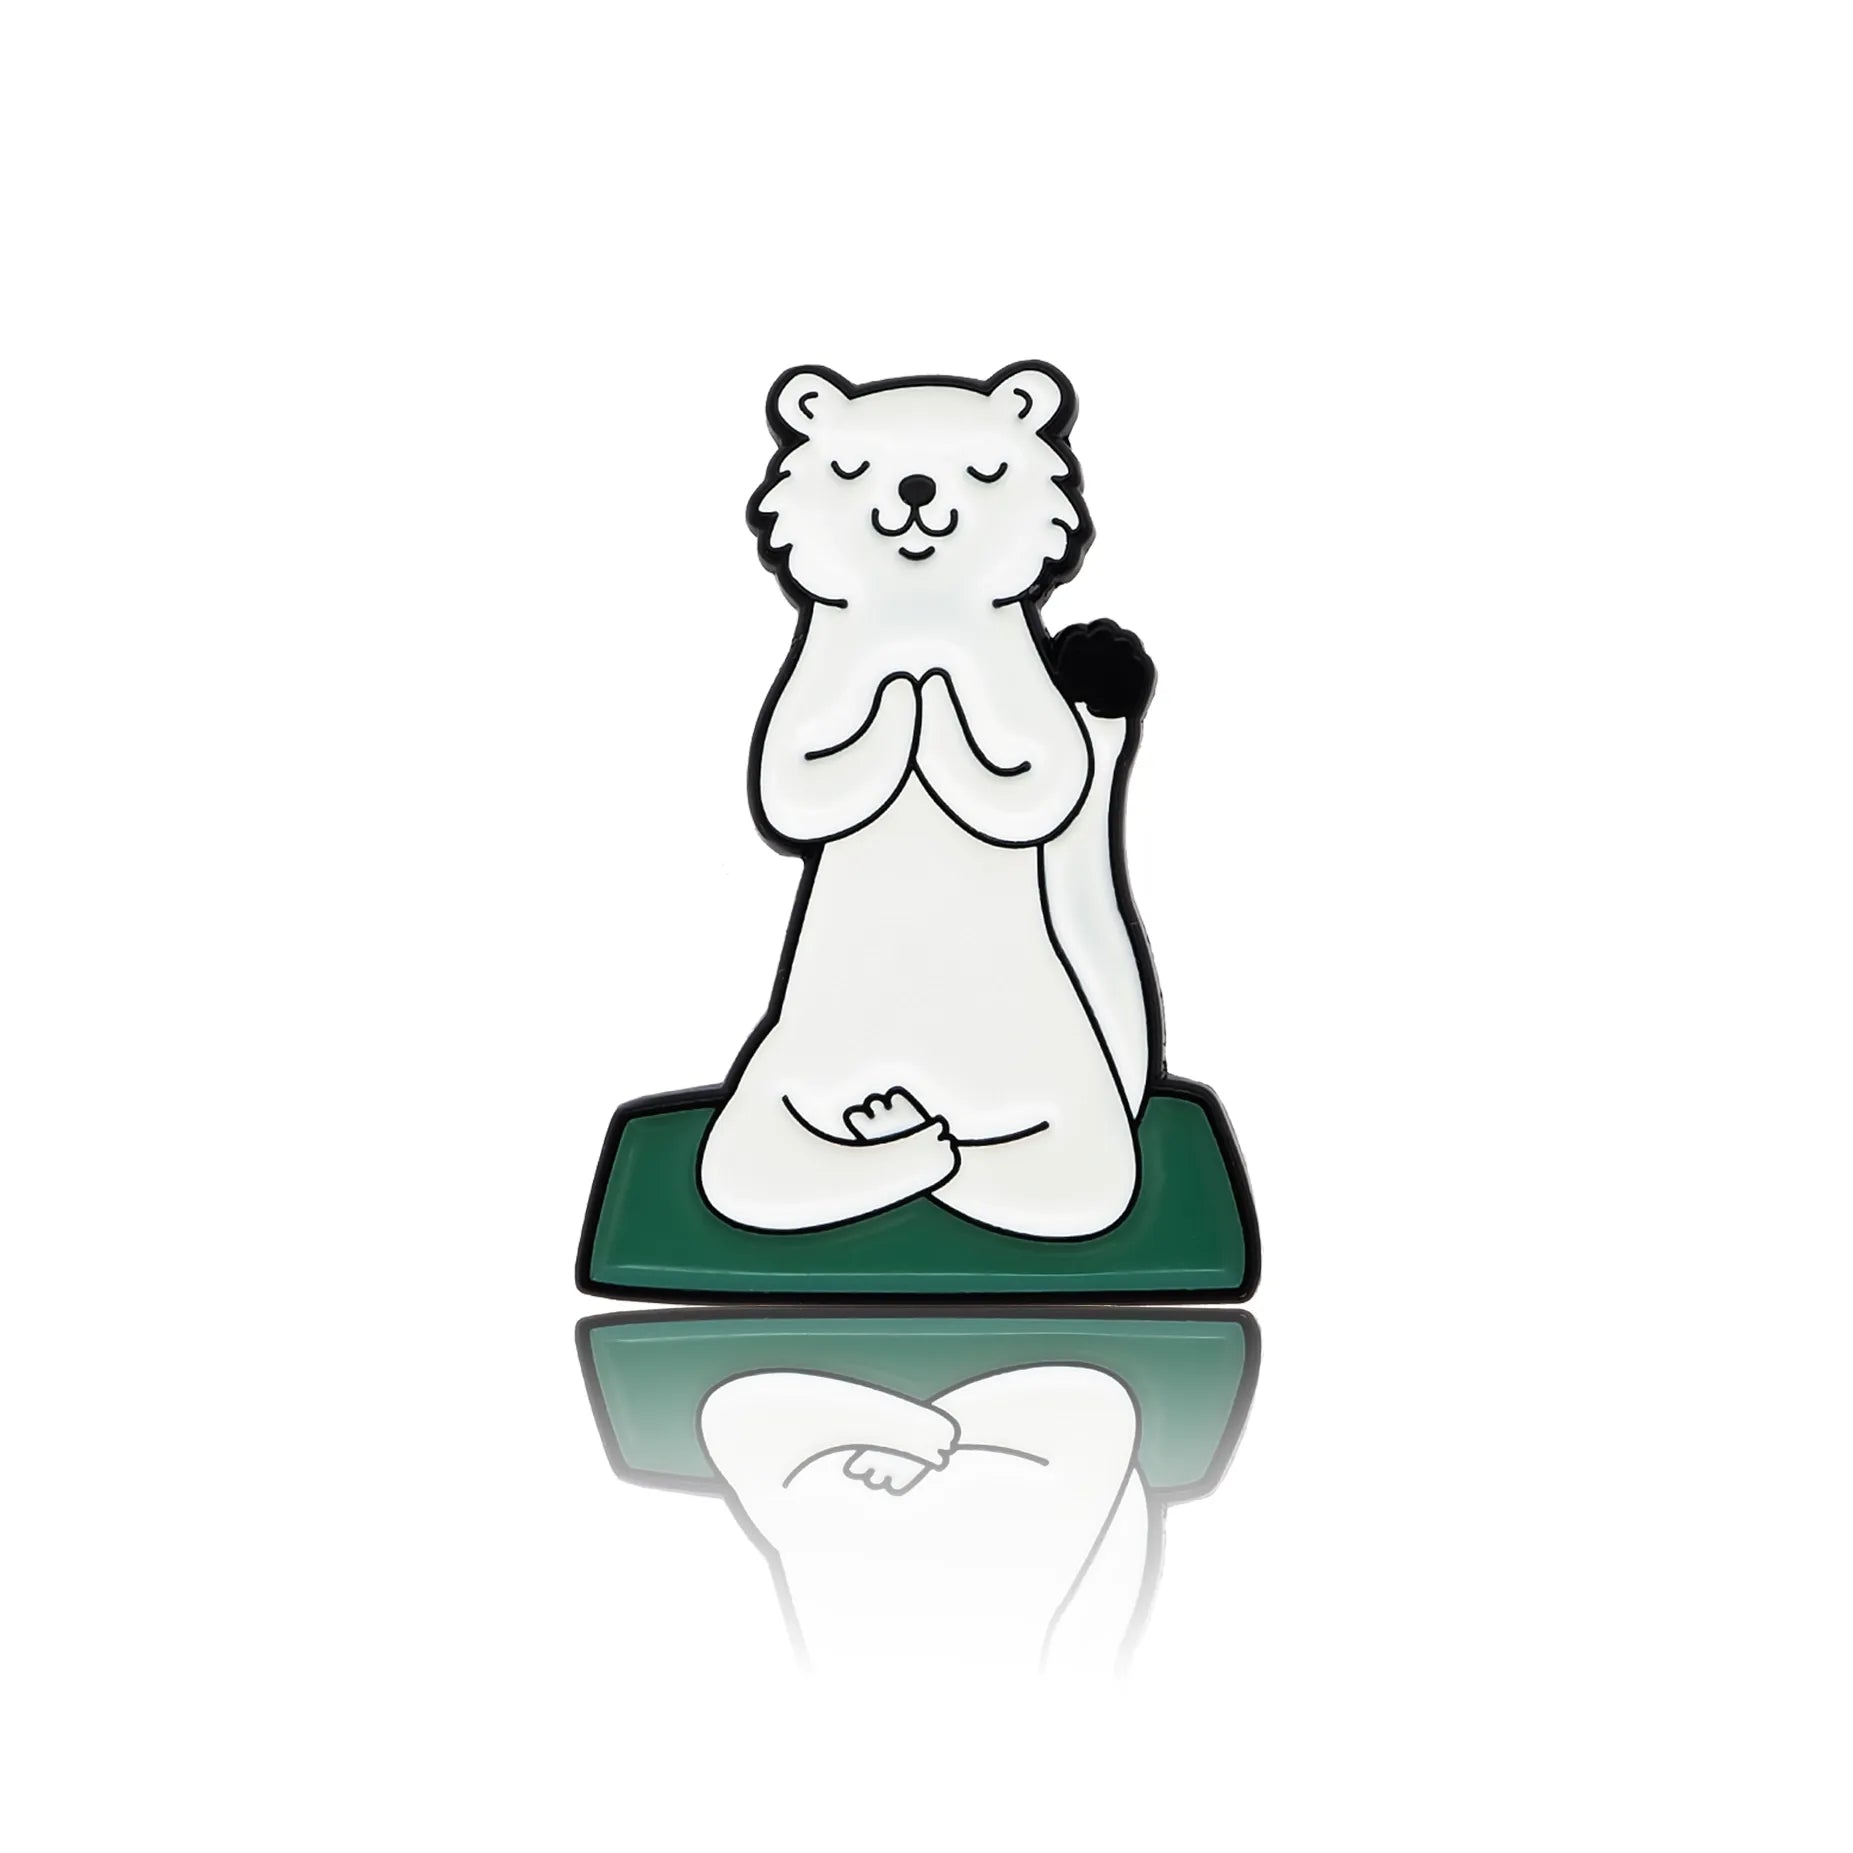 Biała fretka ćwicząca jogę na zielonej macie